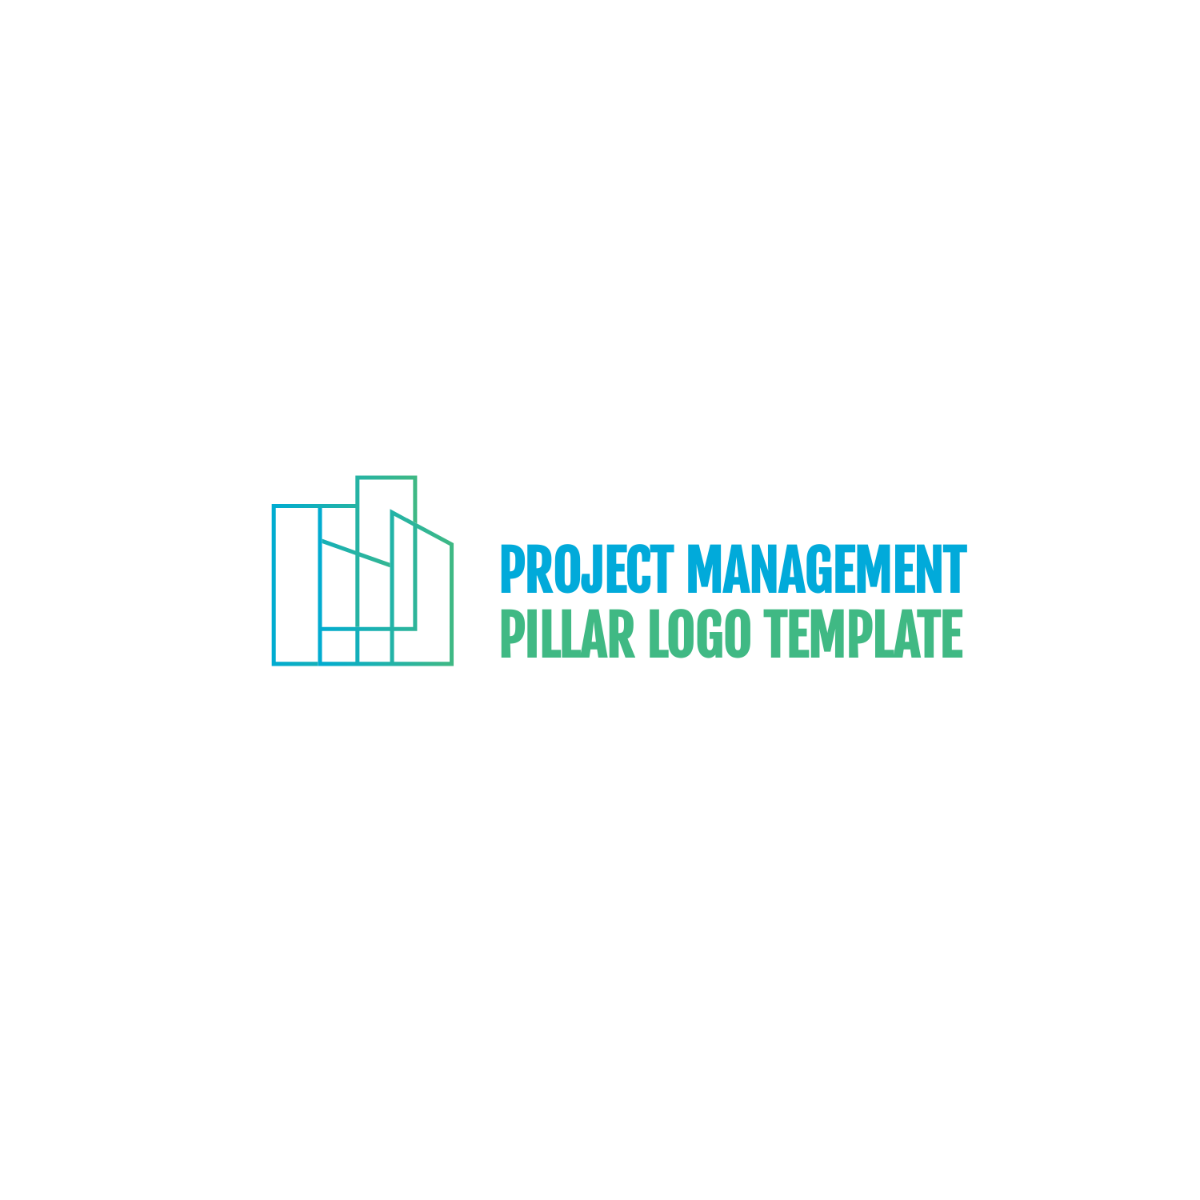 Project Management Pillar Logo Template